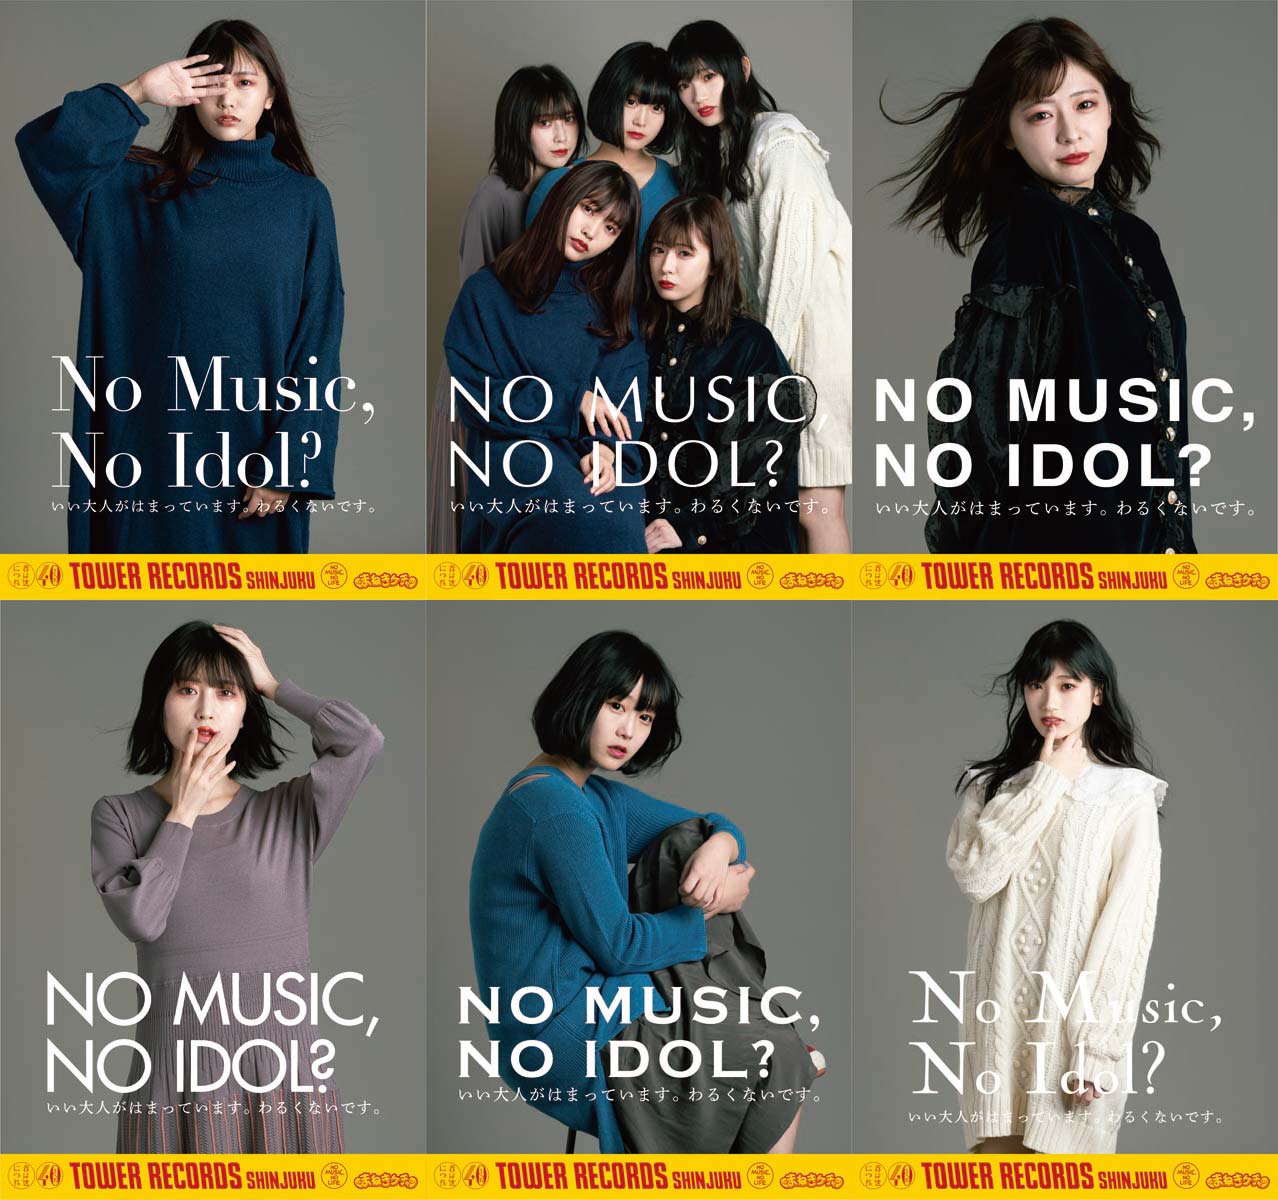 まねきケチャ タワレコのアイドル企画「NO MUSIC, NO IDOL?」に6種の